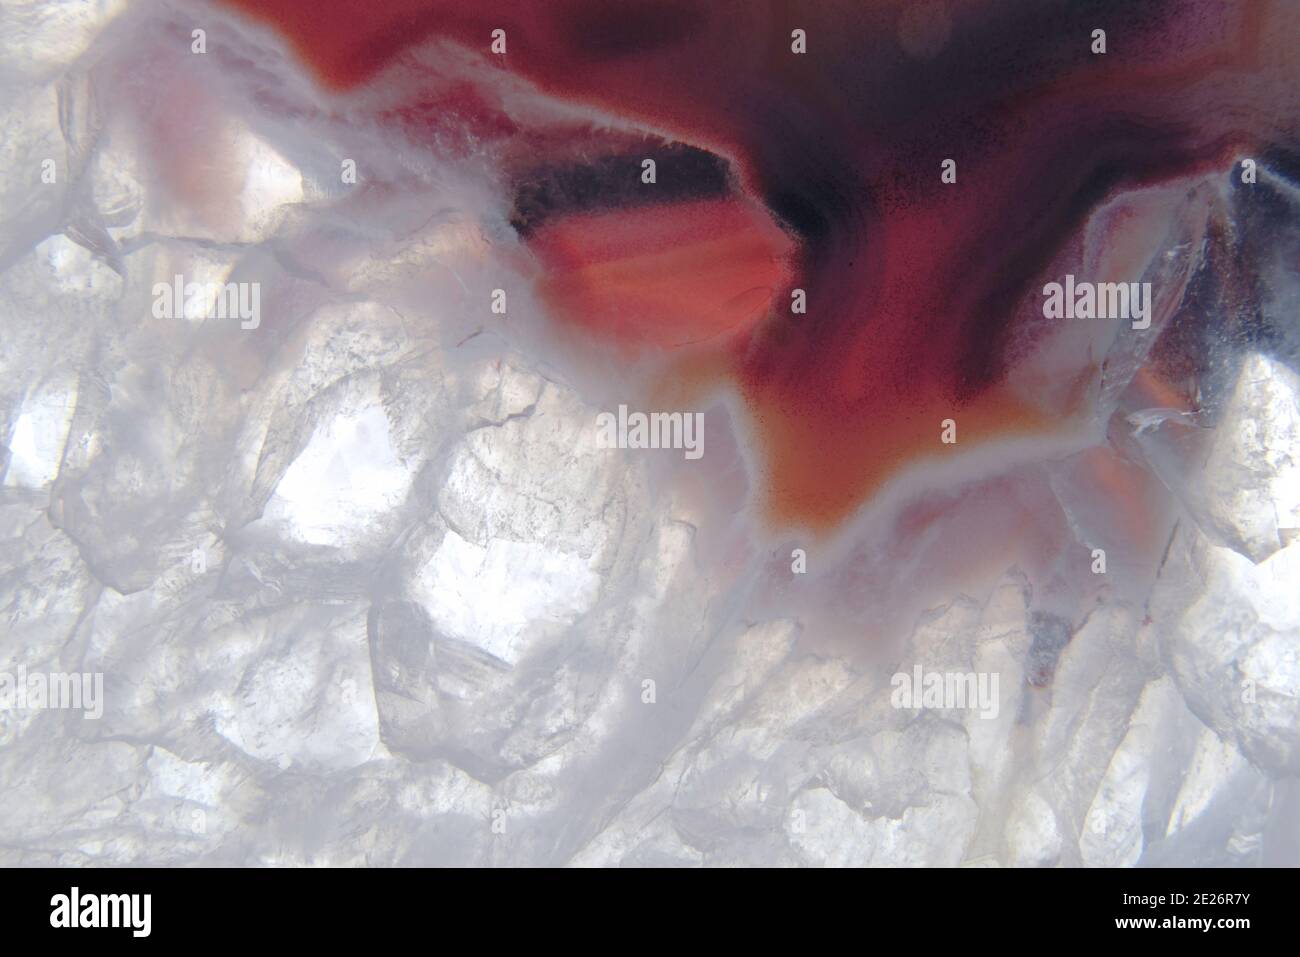 Extreme Nahaufnahme Makrofotografie der Muster, Textur und Kristallisation eines Achates. Diese ist hauptsächlich rot und weiß gefärbt. Stockfoto